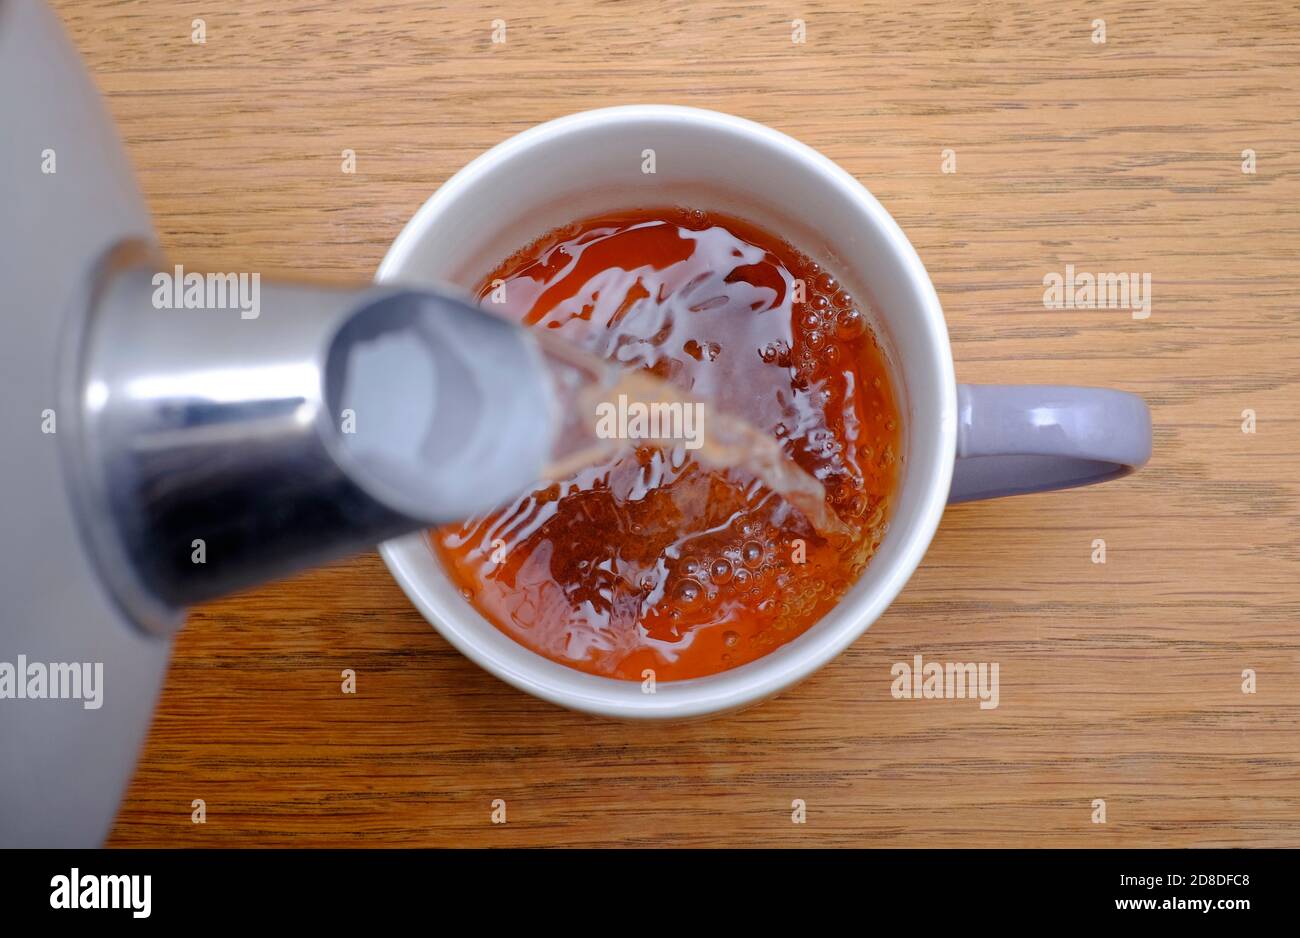 faire une tasse de thé, verser de l'eau chaude sur le teabag dans une tasse, norfolk, angleterre Banque D'Images